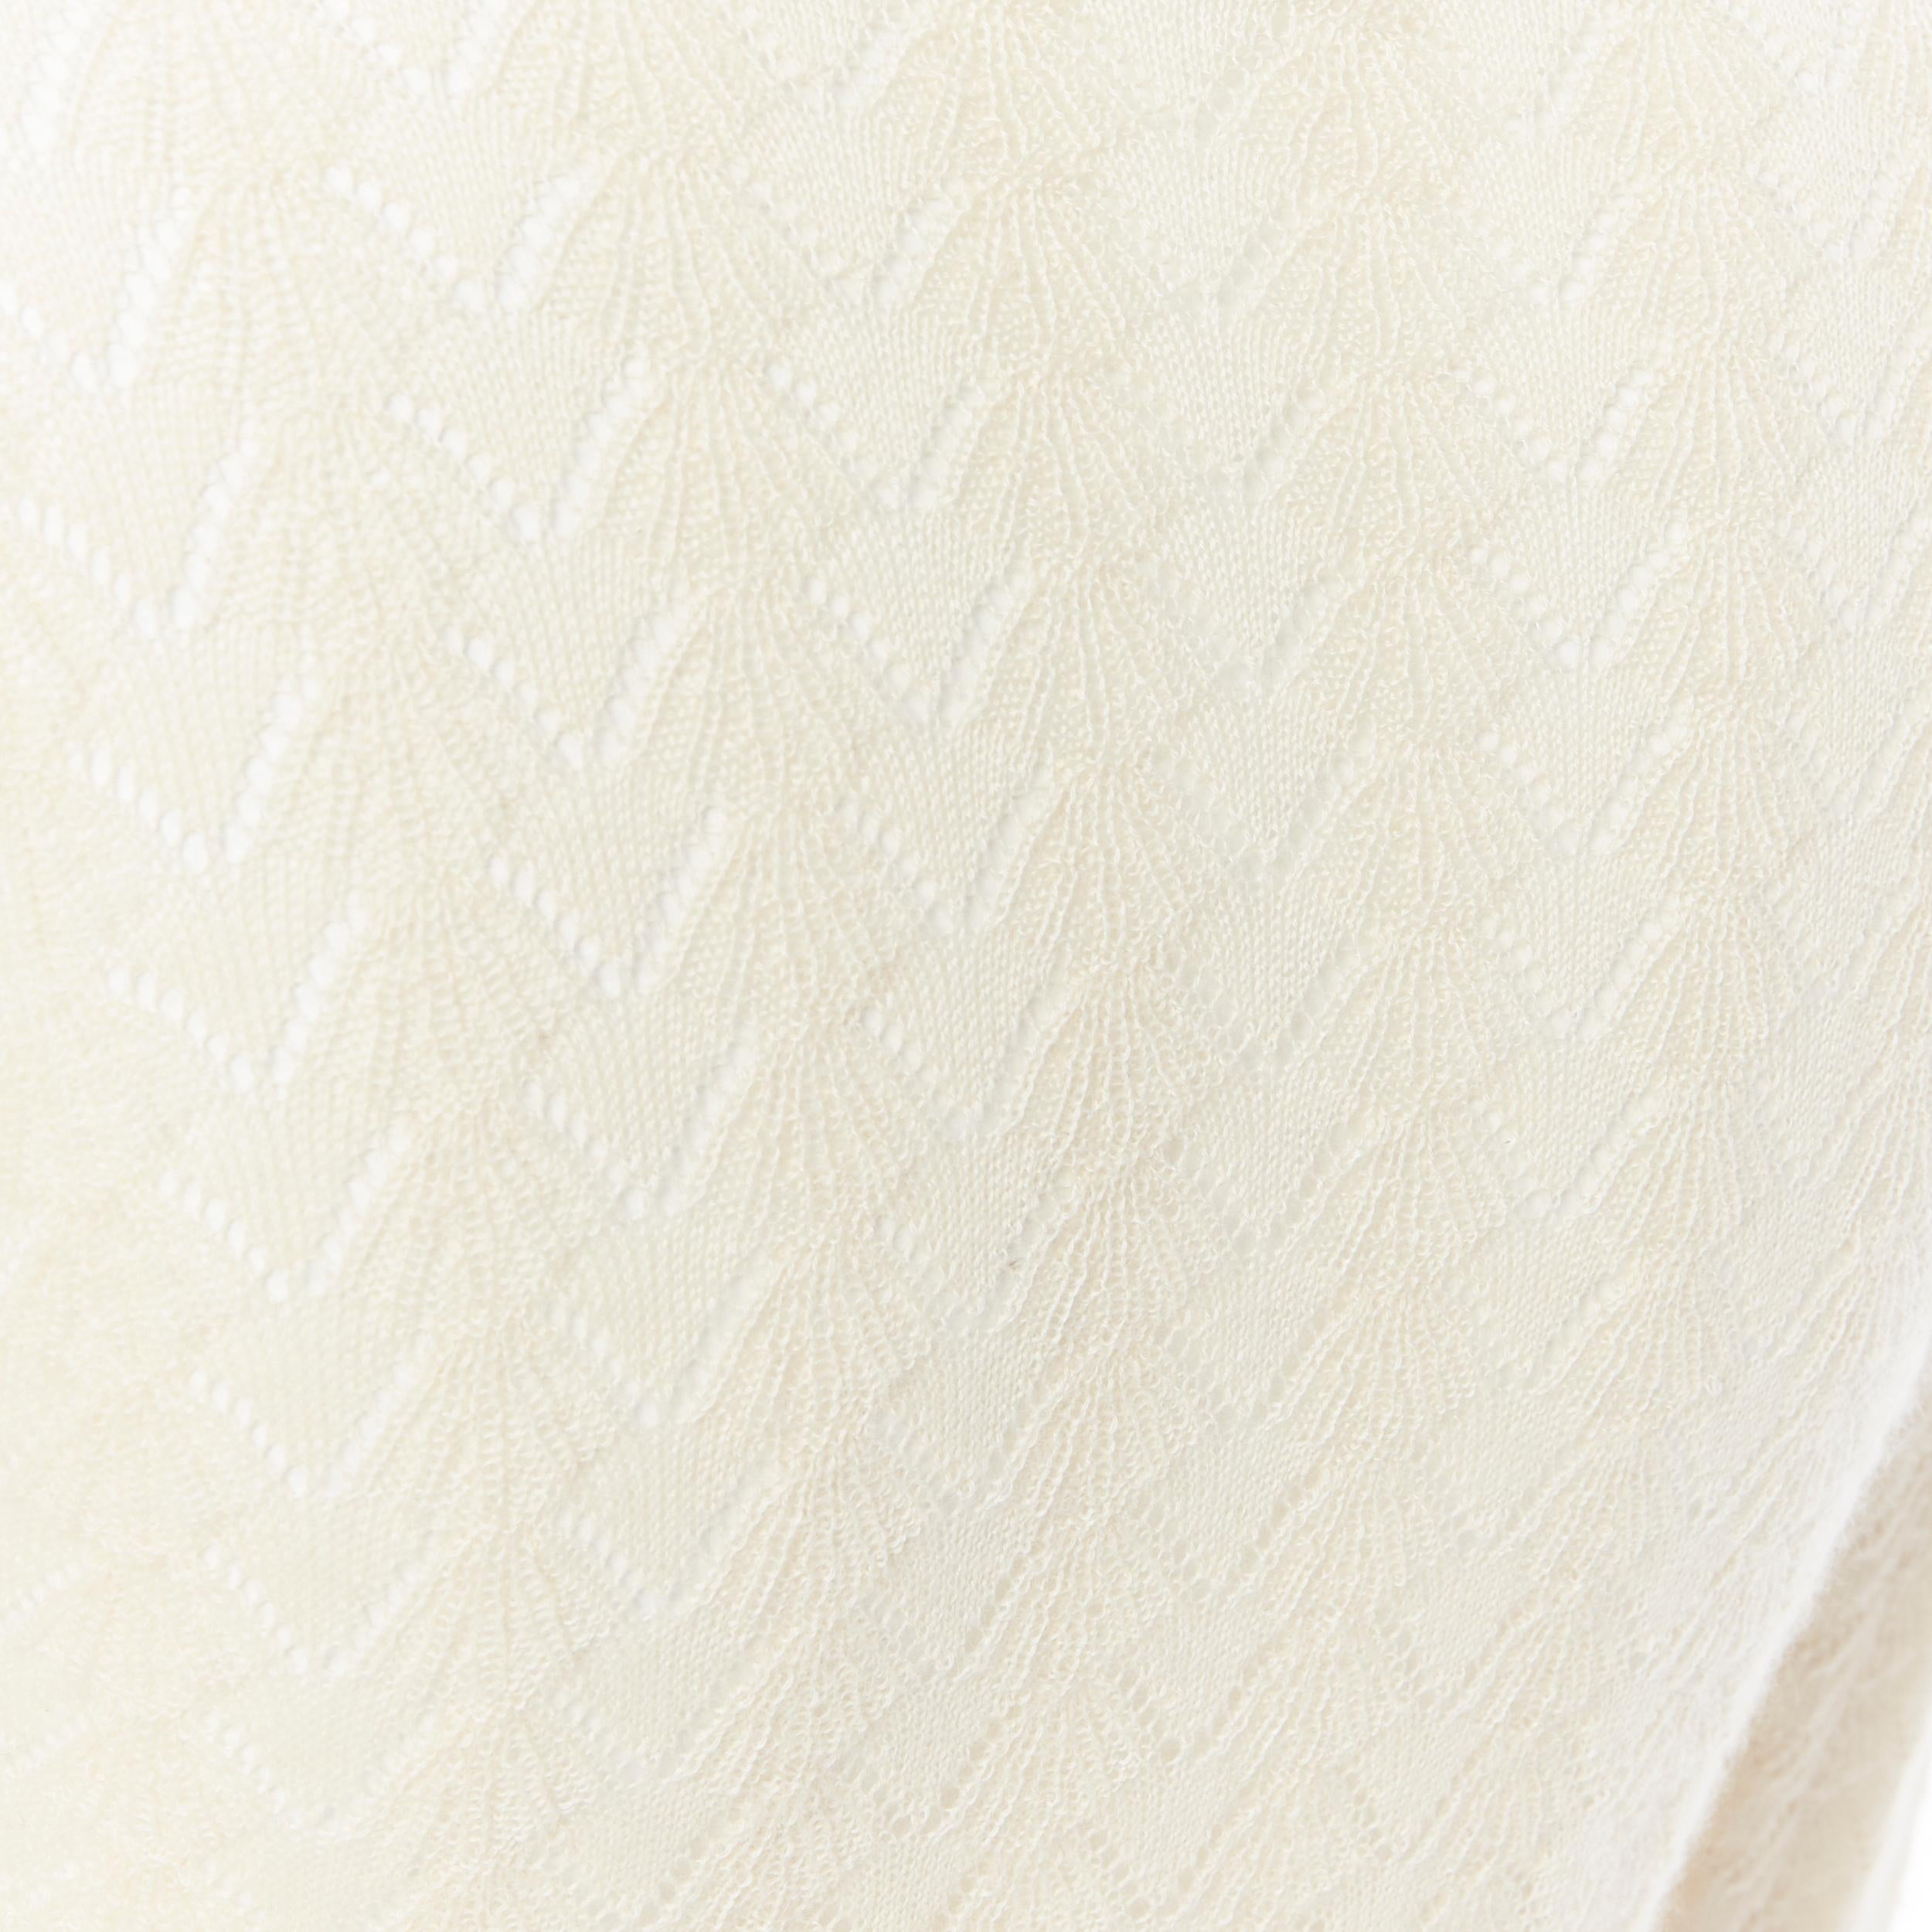 LOUIS VUITTON 100% cashmere cream beige lace knit  turtleneck sweater top M 2